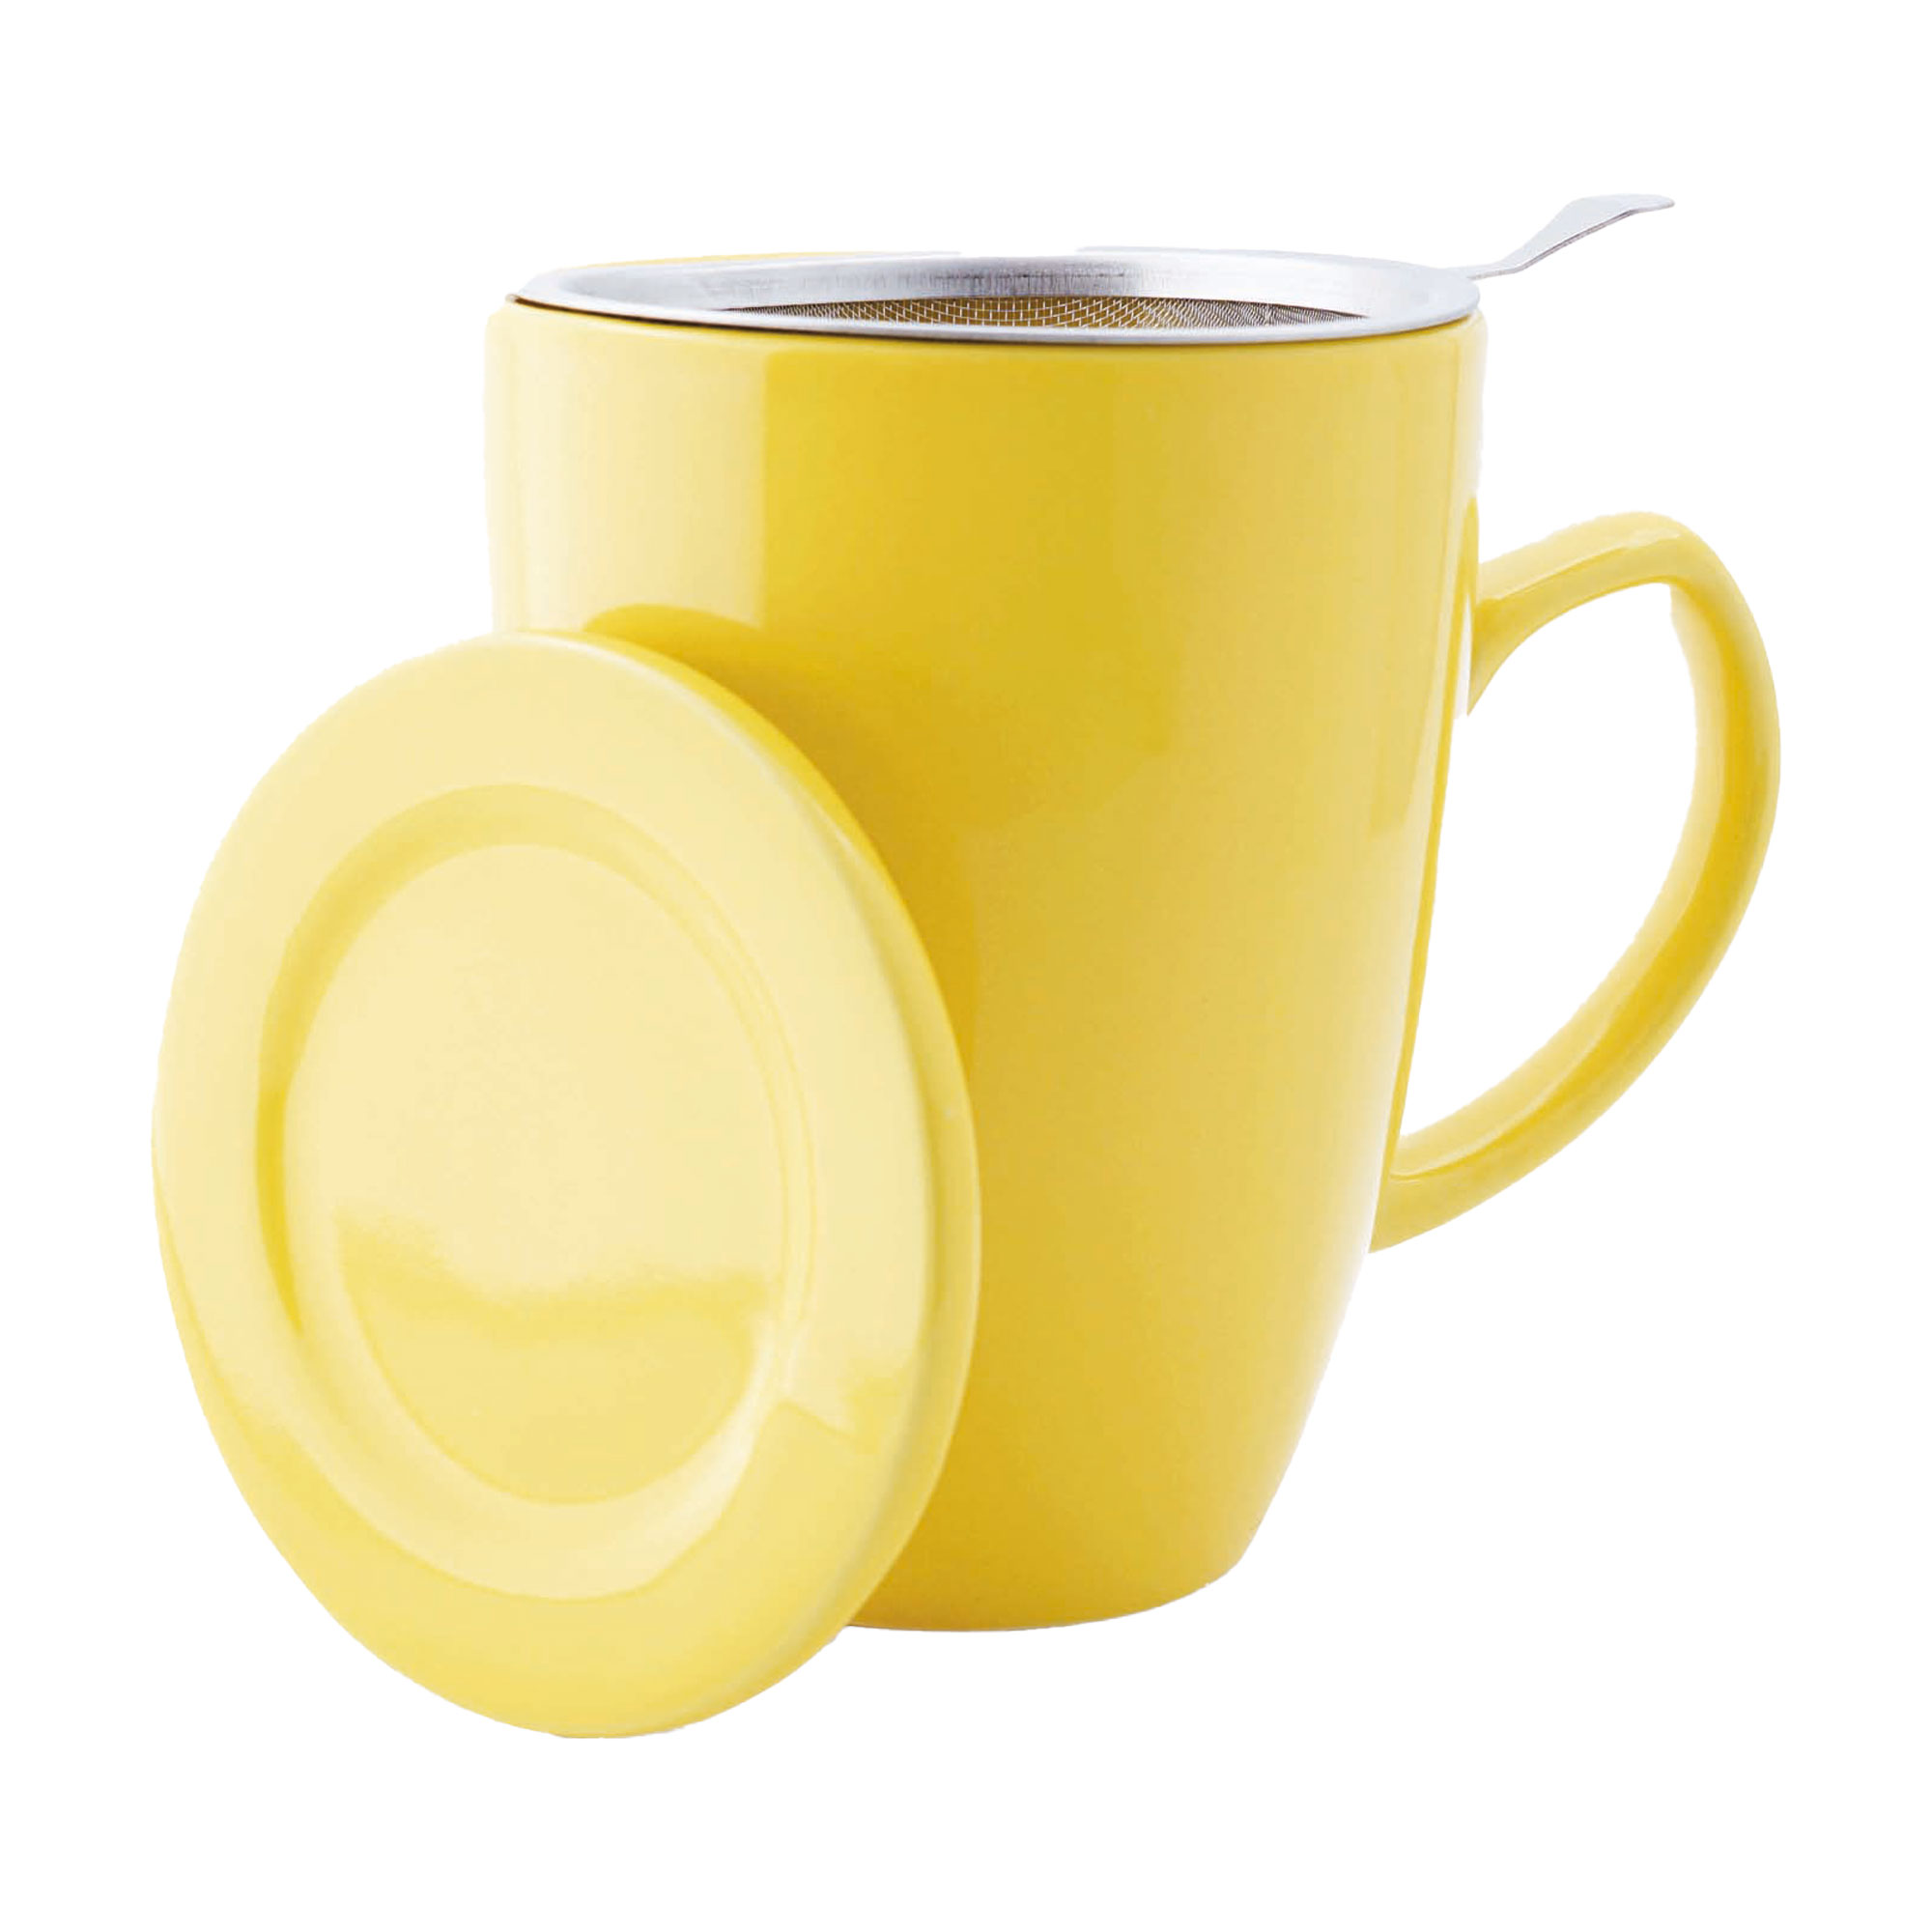 Teetasse mit Siebeinsatz und Deckel. Farbe: Sonnengelb. Mit 0,35 Liter Fassungsvermögen.